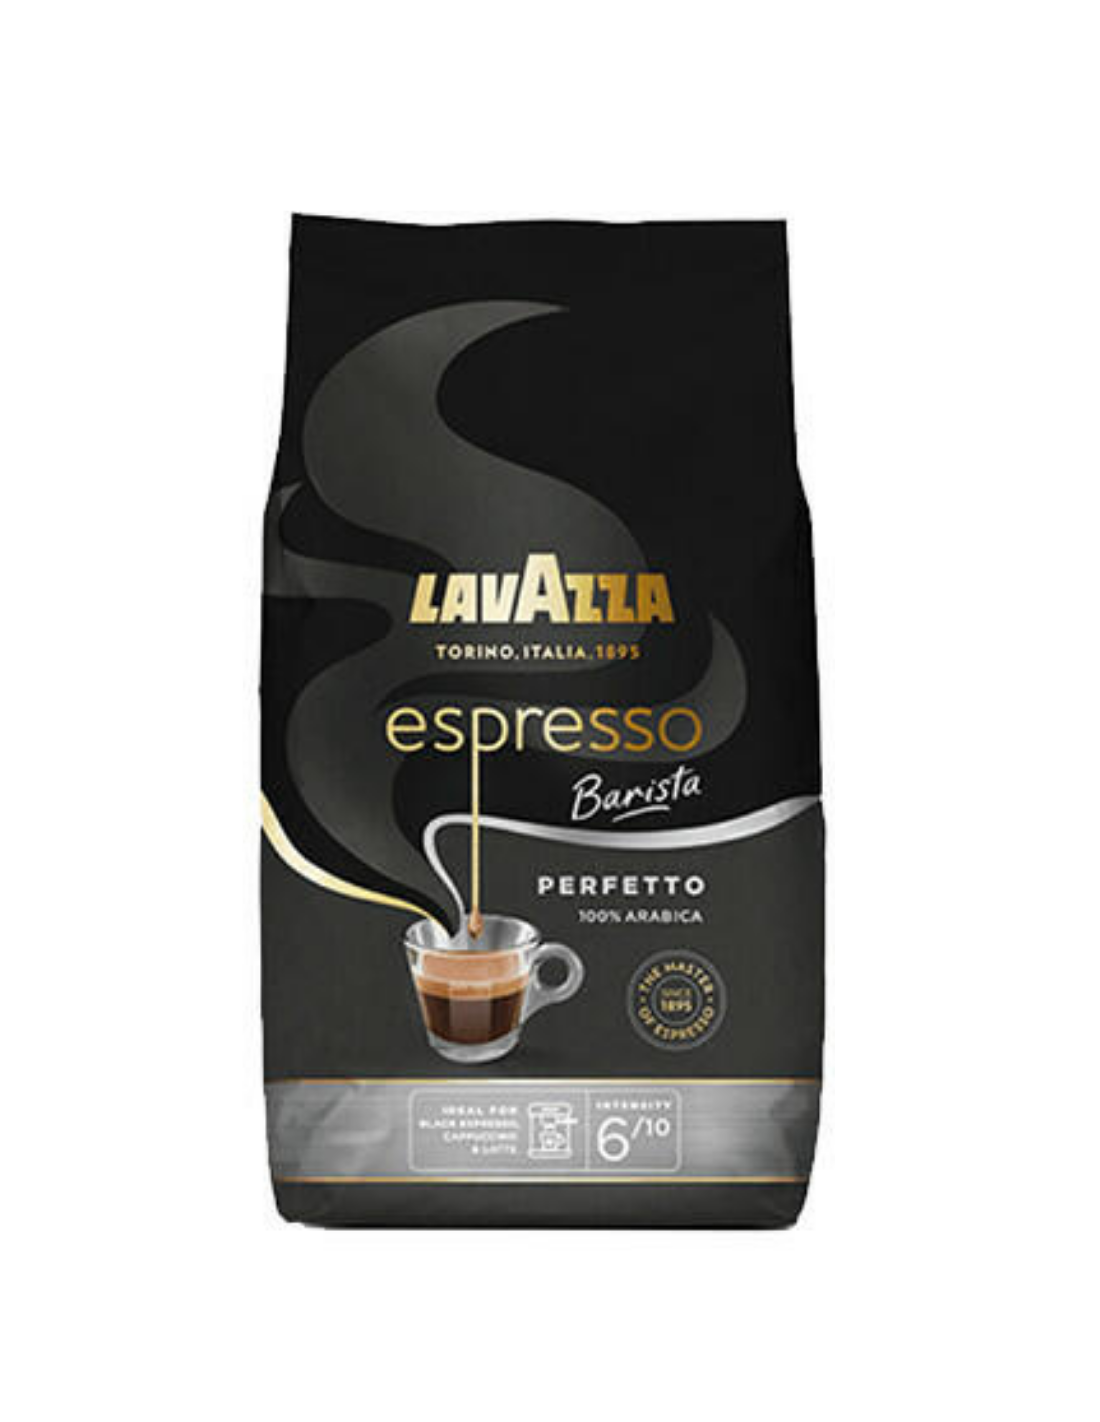 Cafea boabe Lavazza Espresso Barista Perfetto, 1Kg